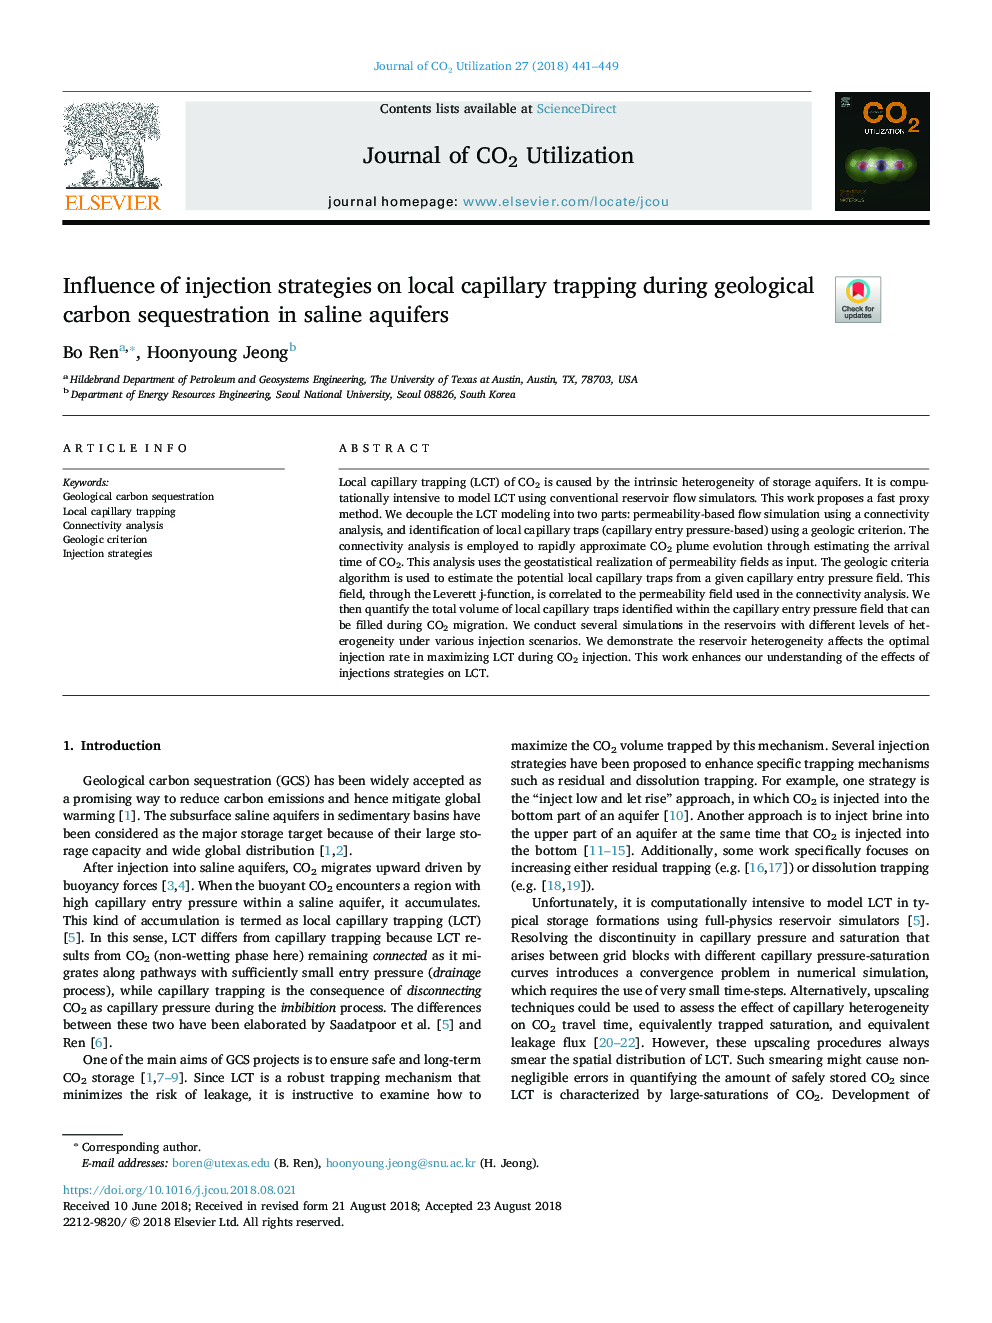 تأثیر استراتژی تزریق بر تله مویرگهای موضعی در طول جداسازی کربن زمینشناسی در آبخوان شوری